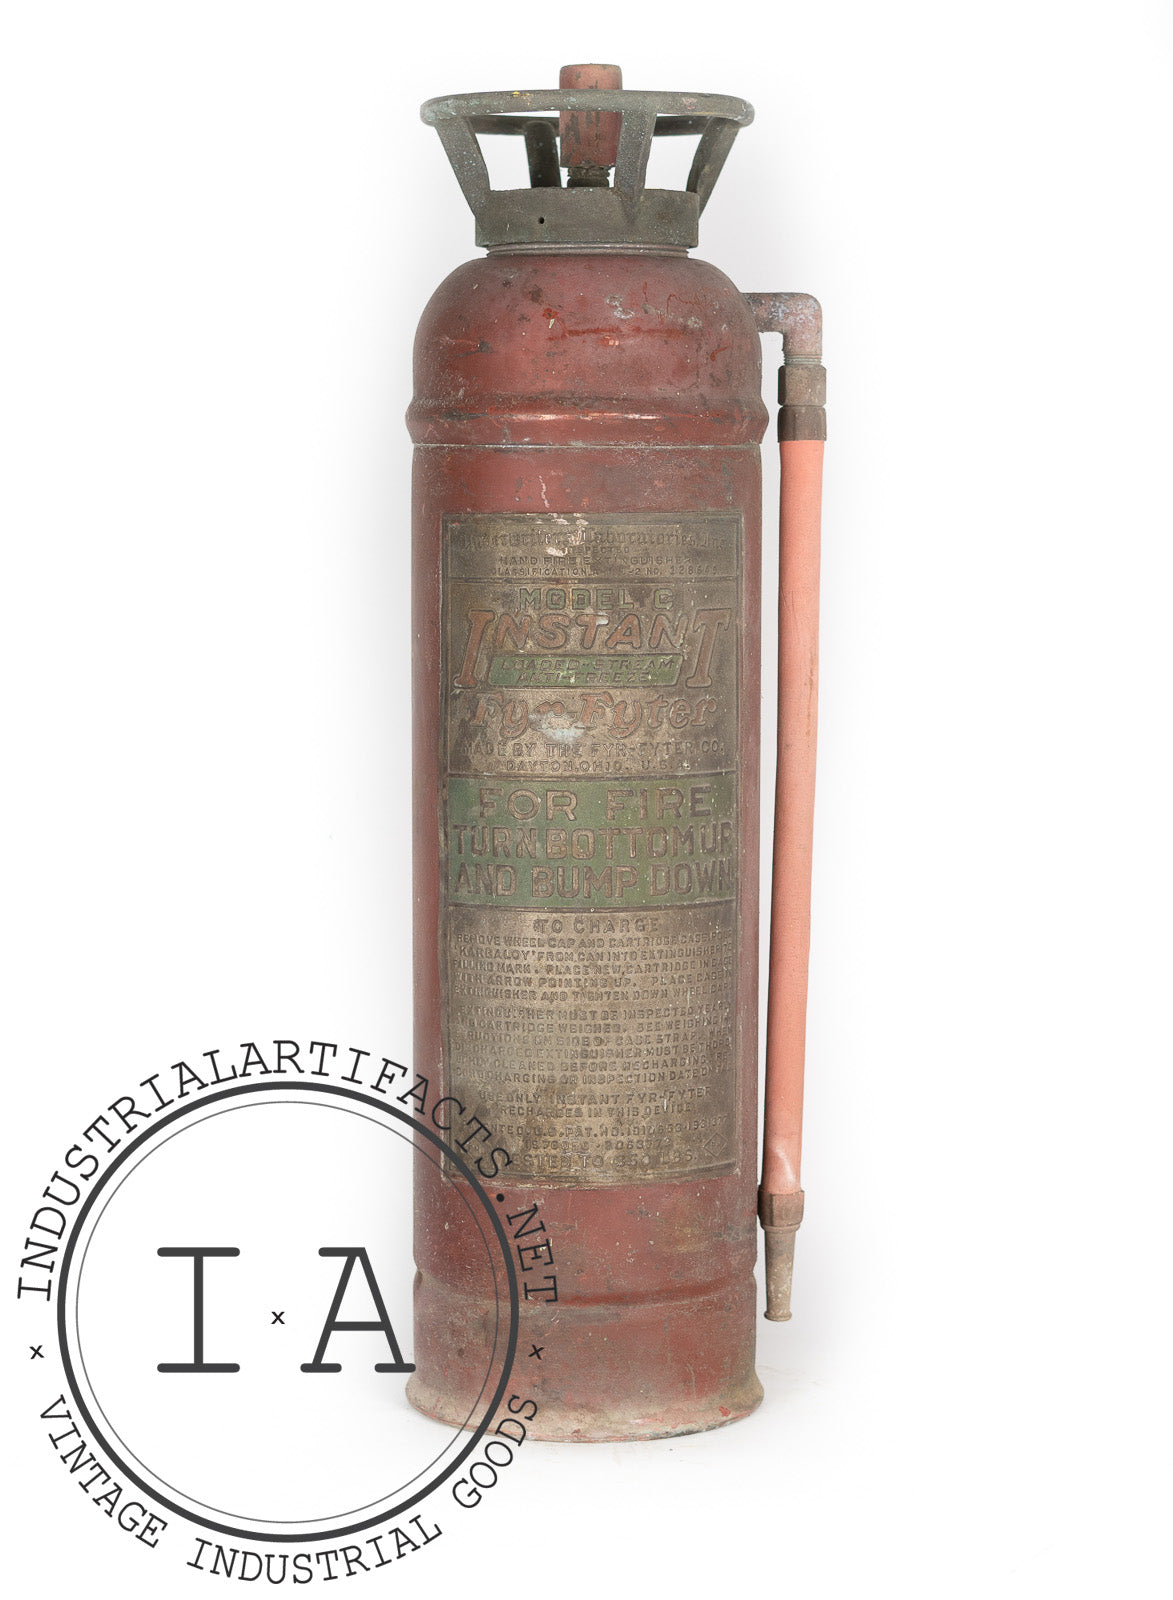 Model C "Fyr-Fyter" Fire Extinguisher